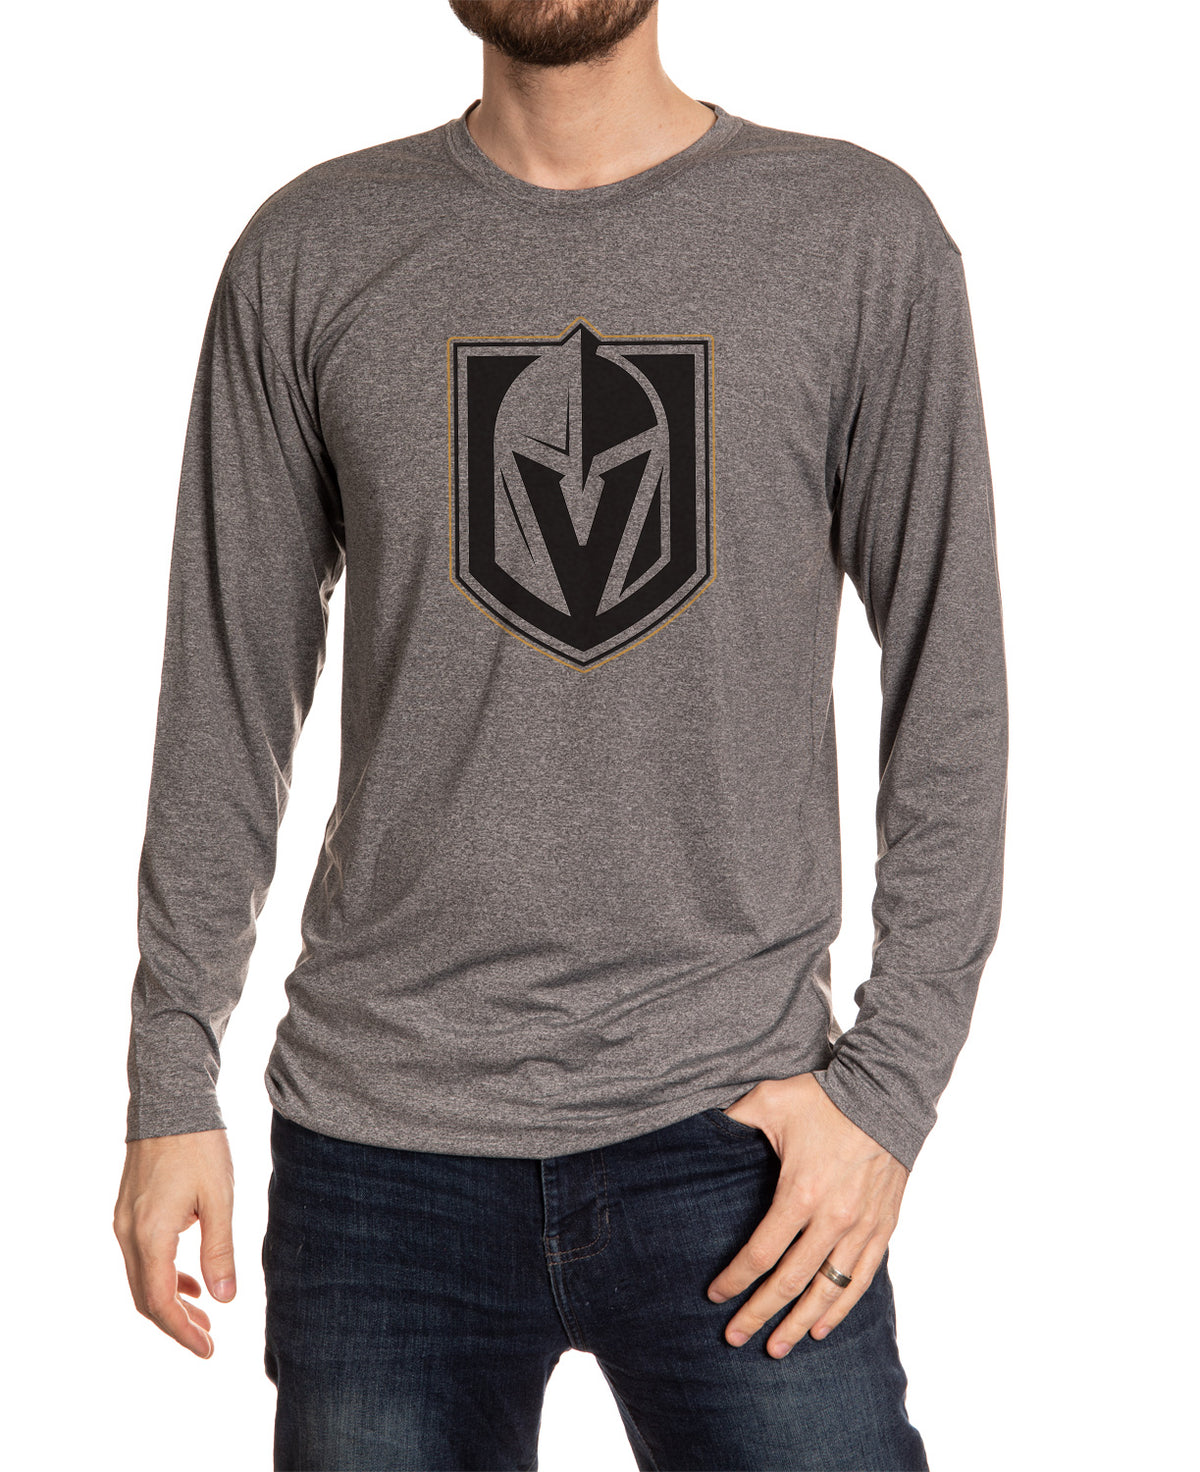 Vegas Golden Knights Long Sleeve Blackout Shirt Front View